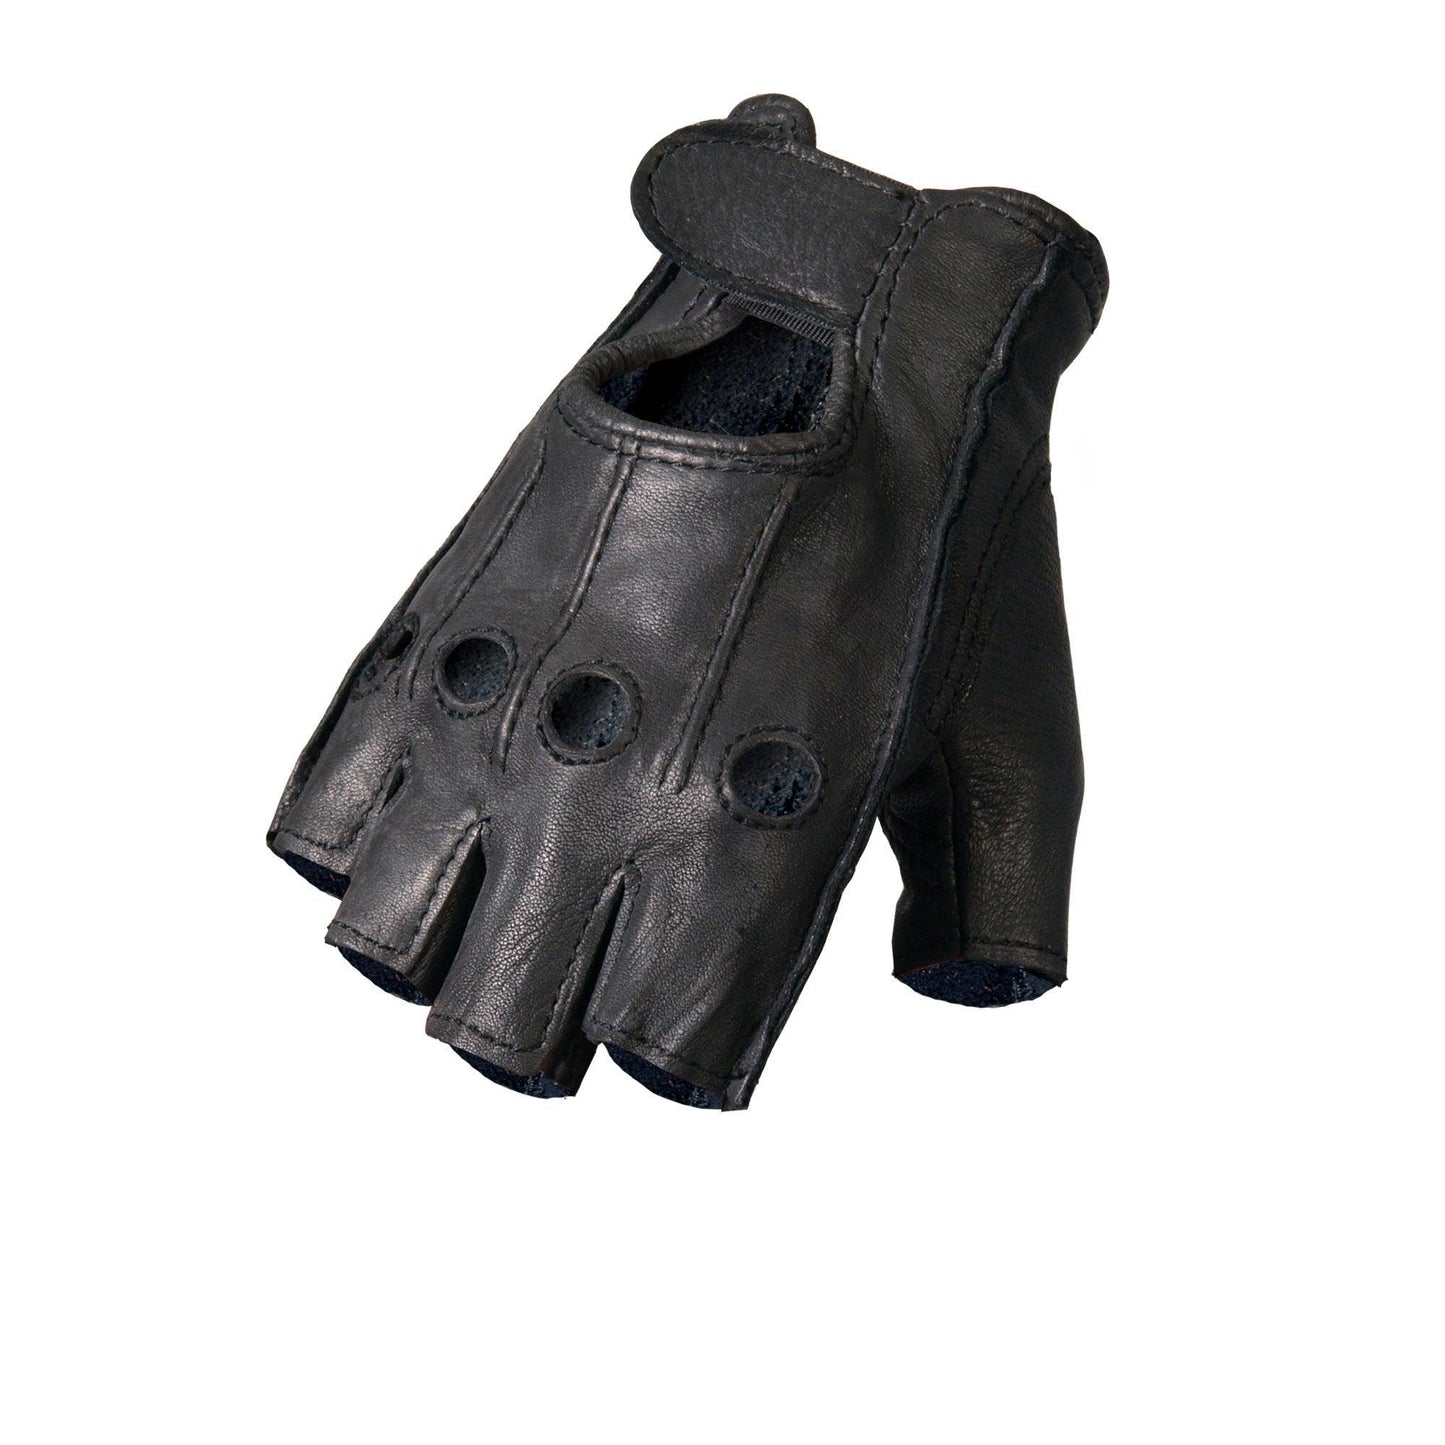 Deerskin Fingerless Motorcycle Gloves - Military Republic